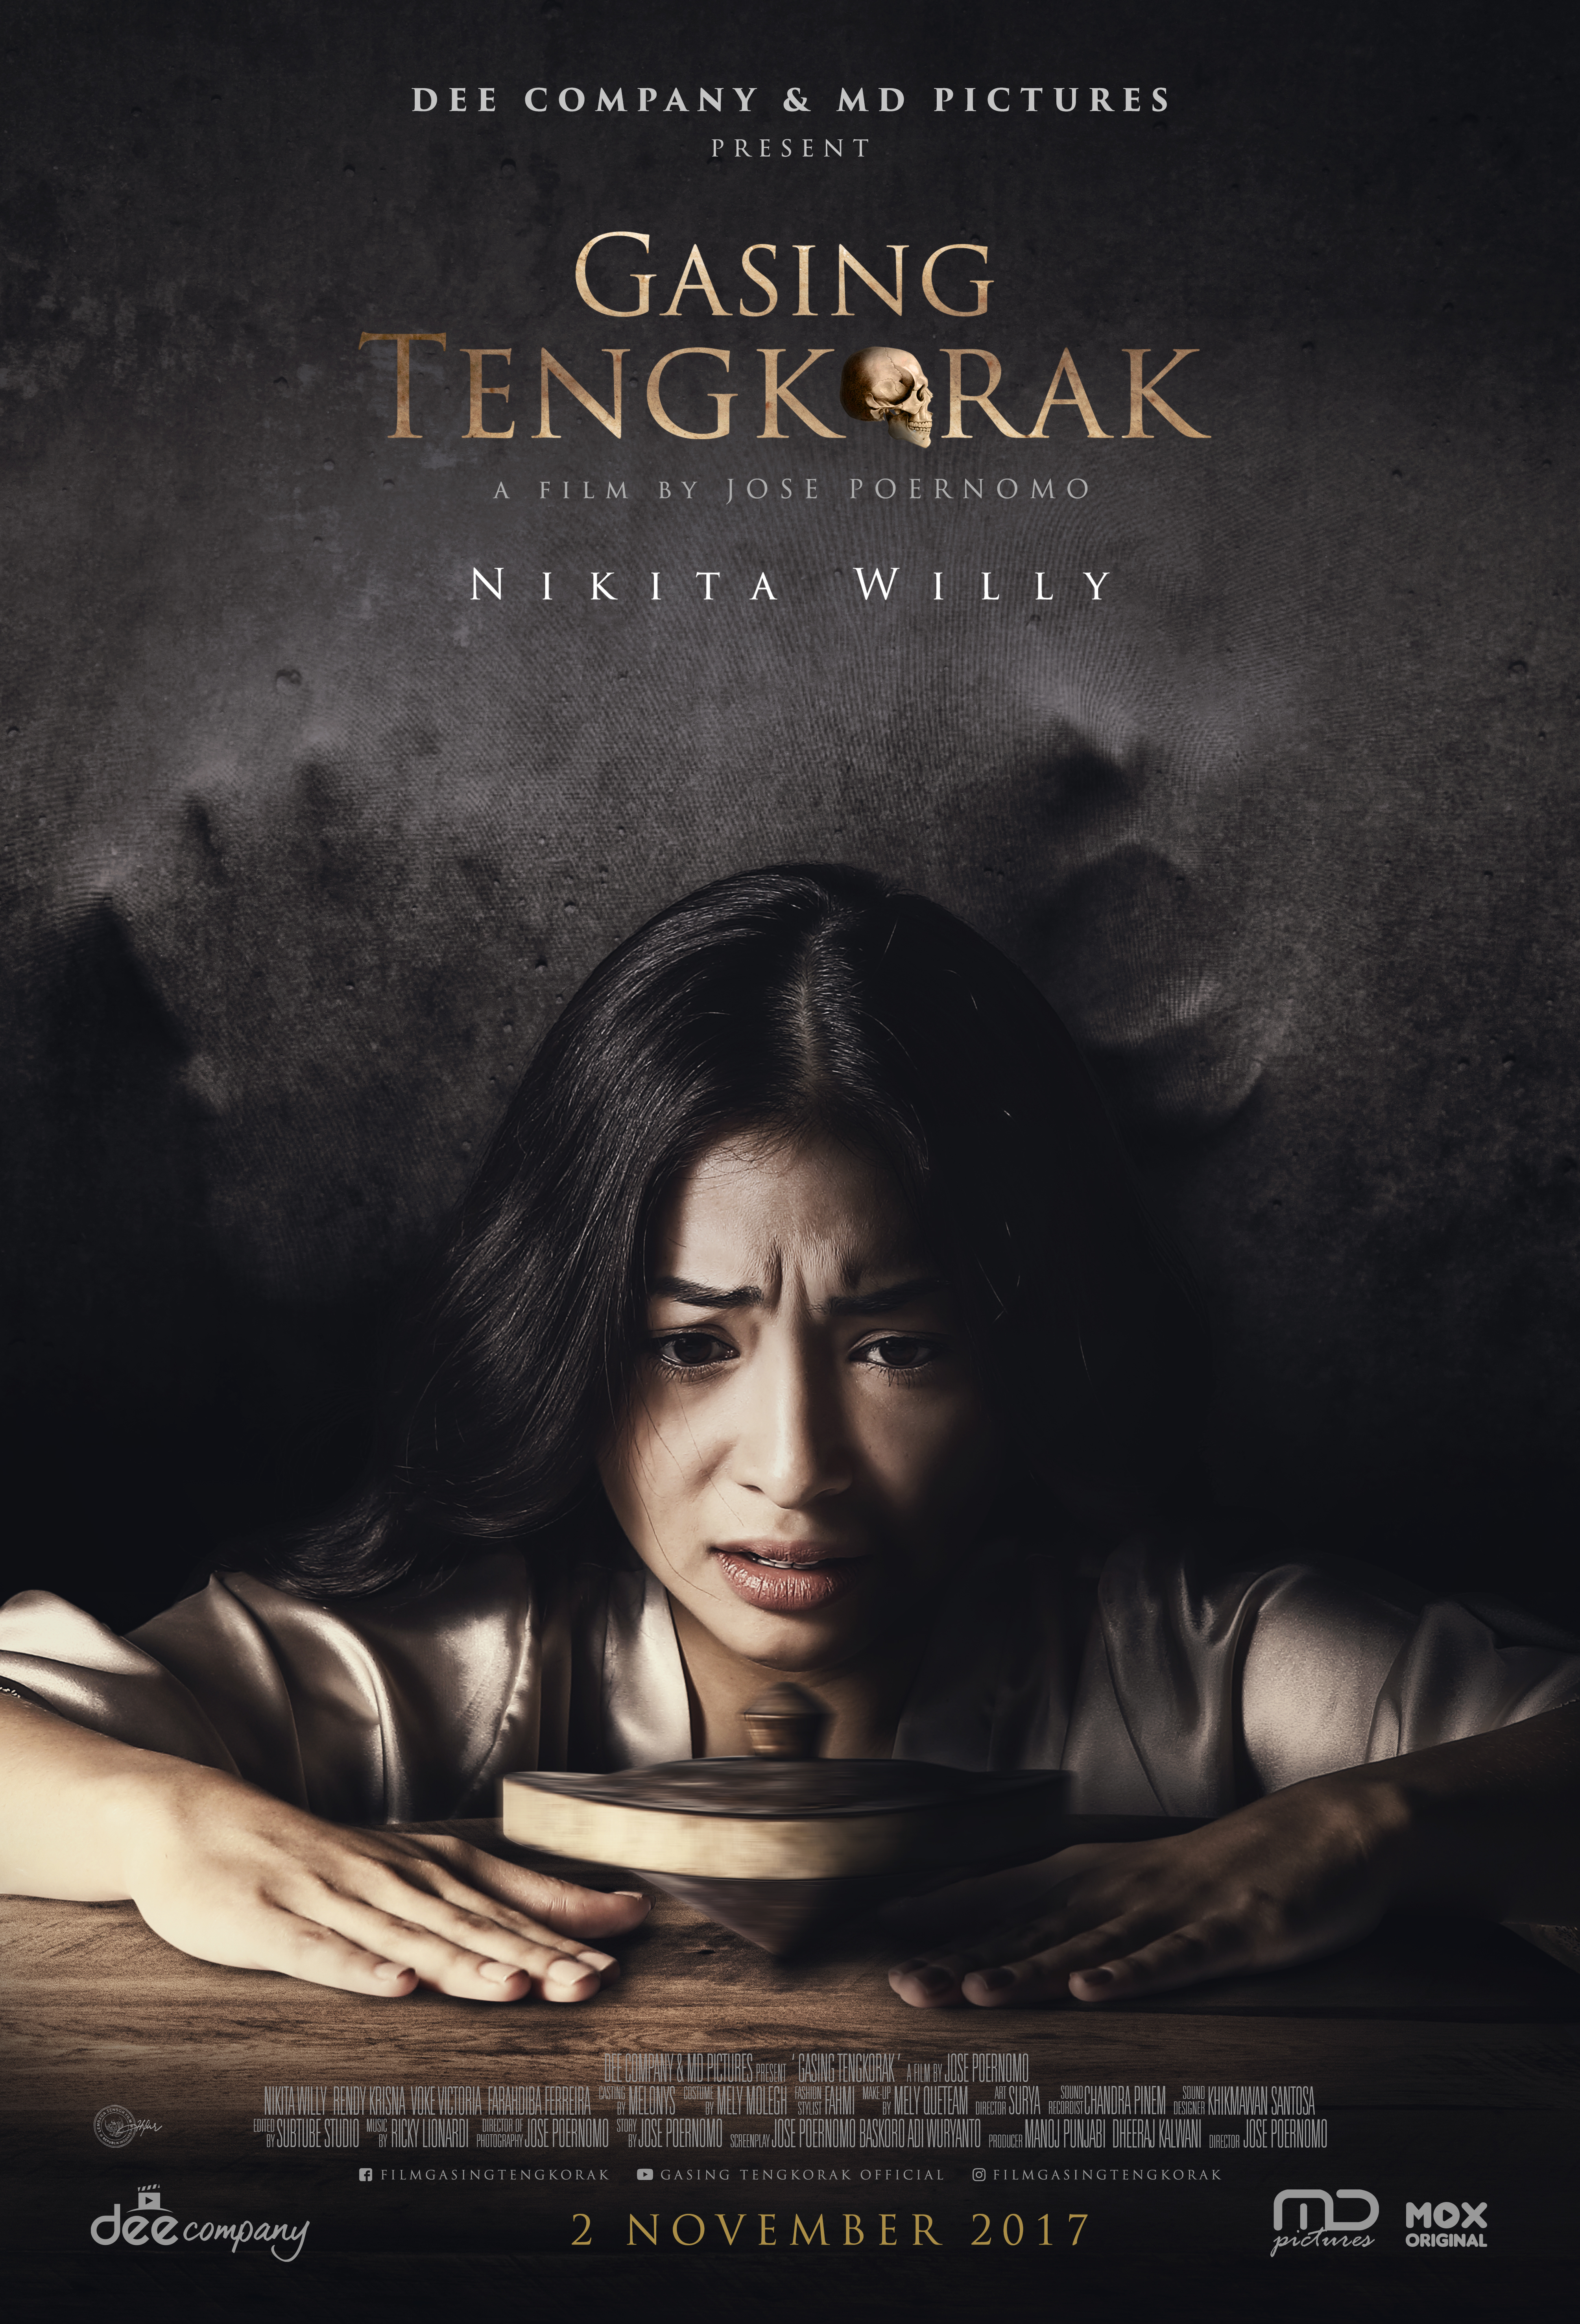 Gasing Tengkorak (2017) Screenshot 1